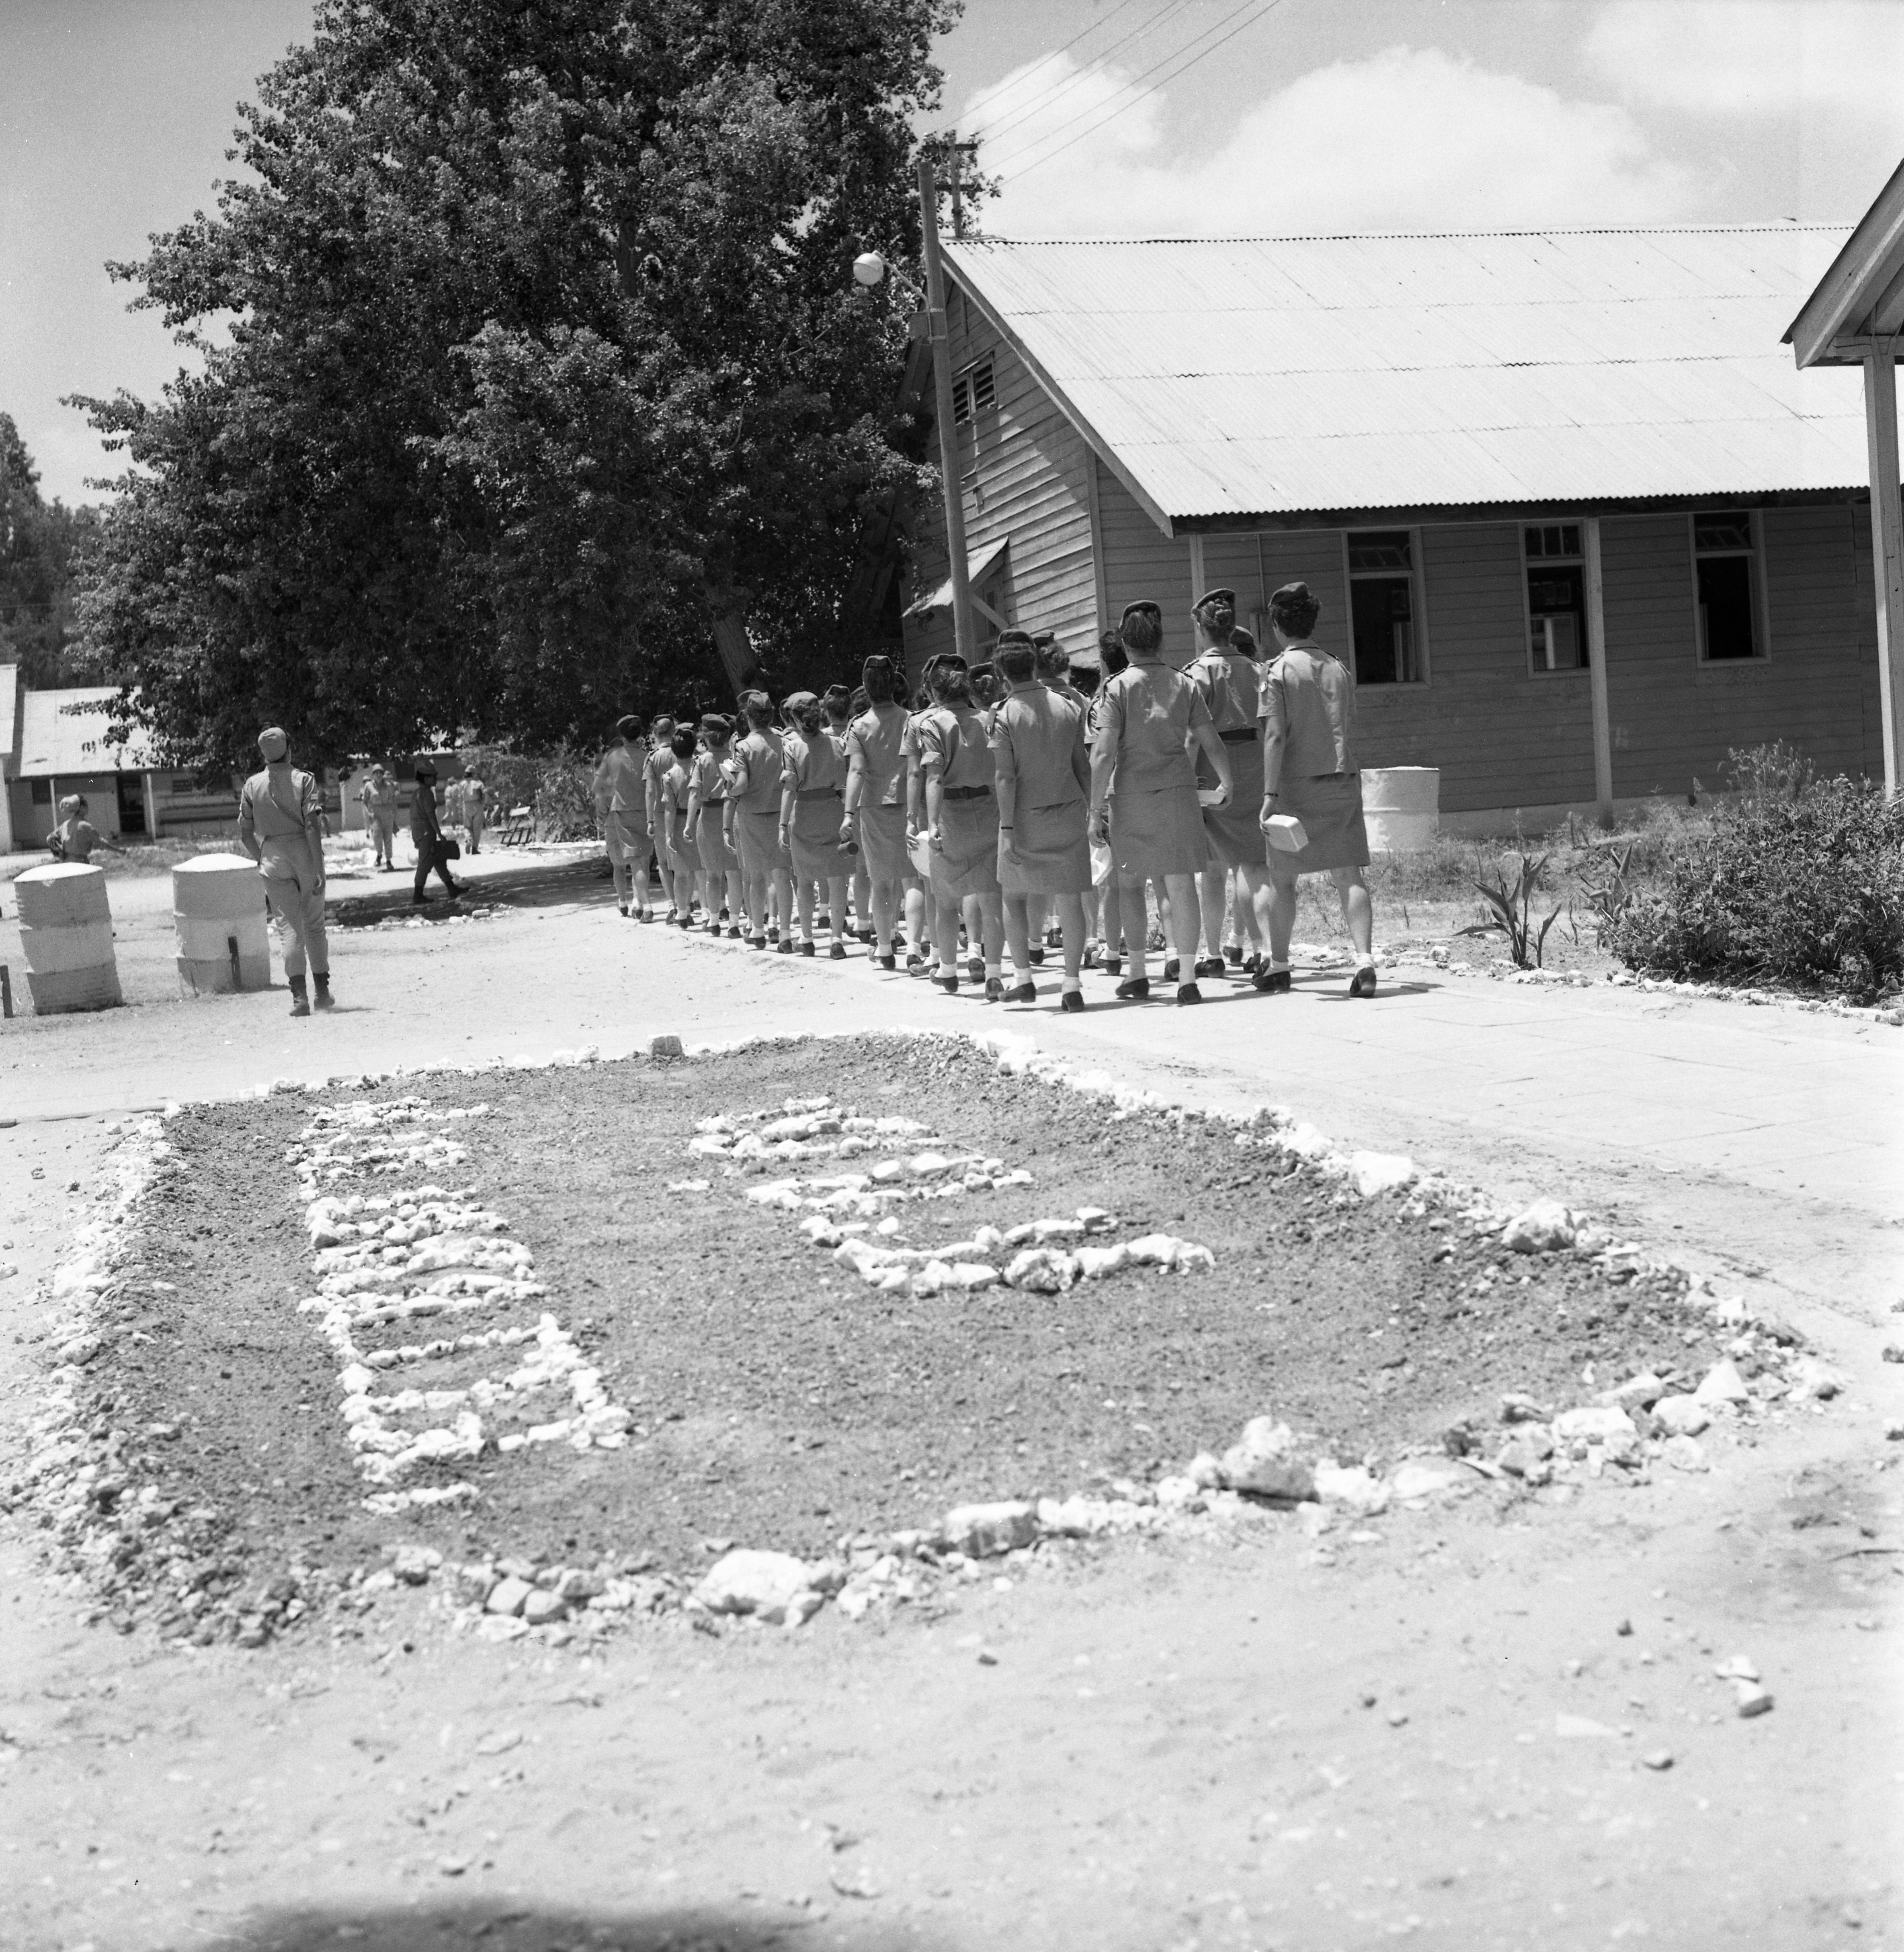  צה"ל מחנה חיילות; 1968